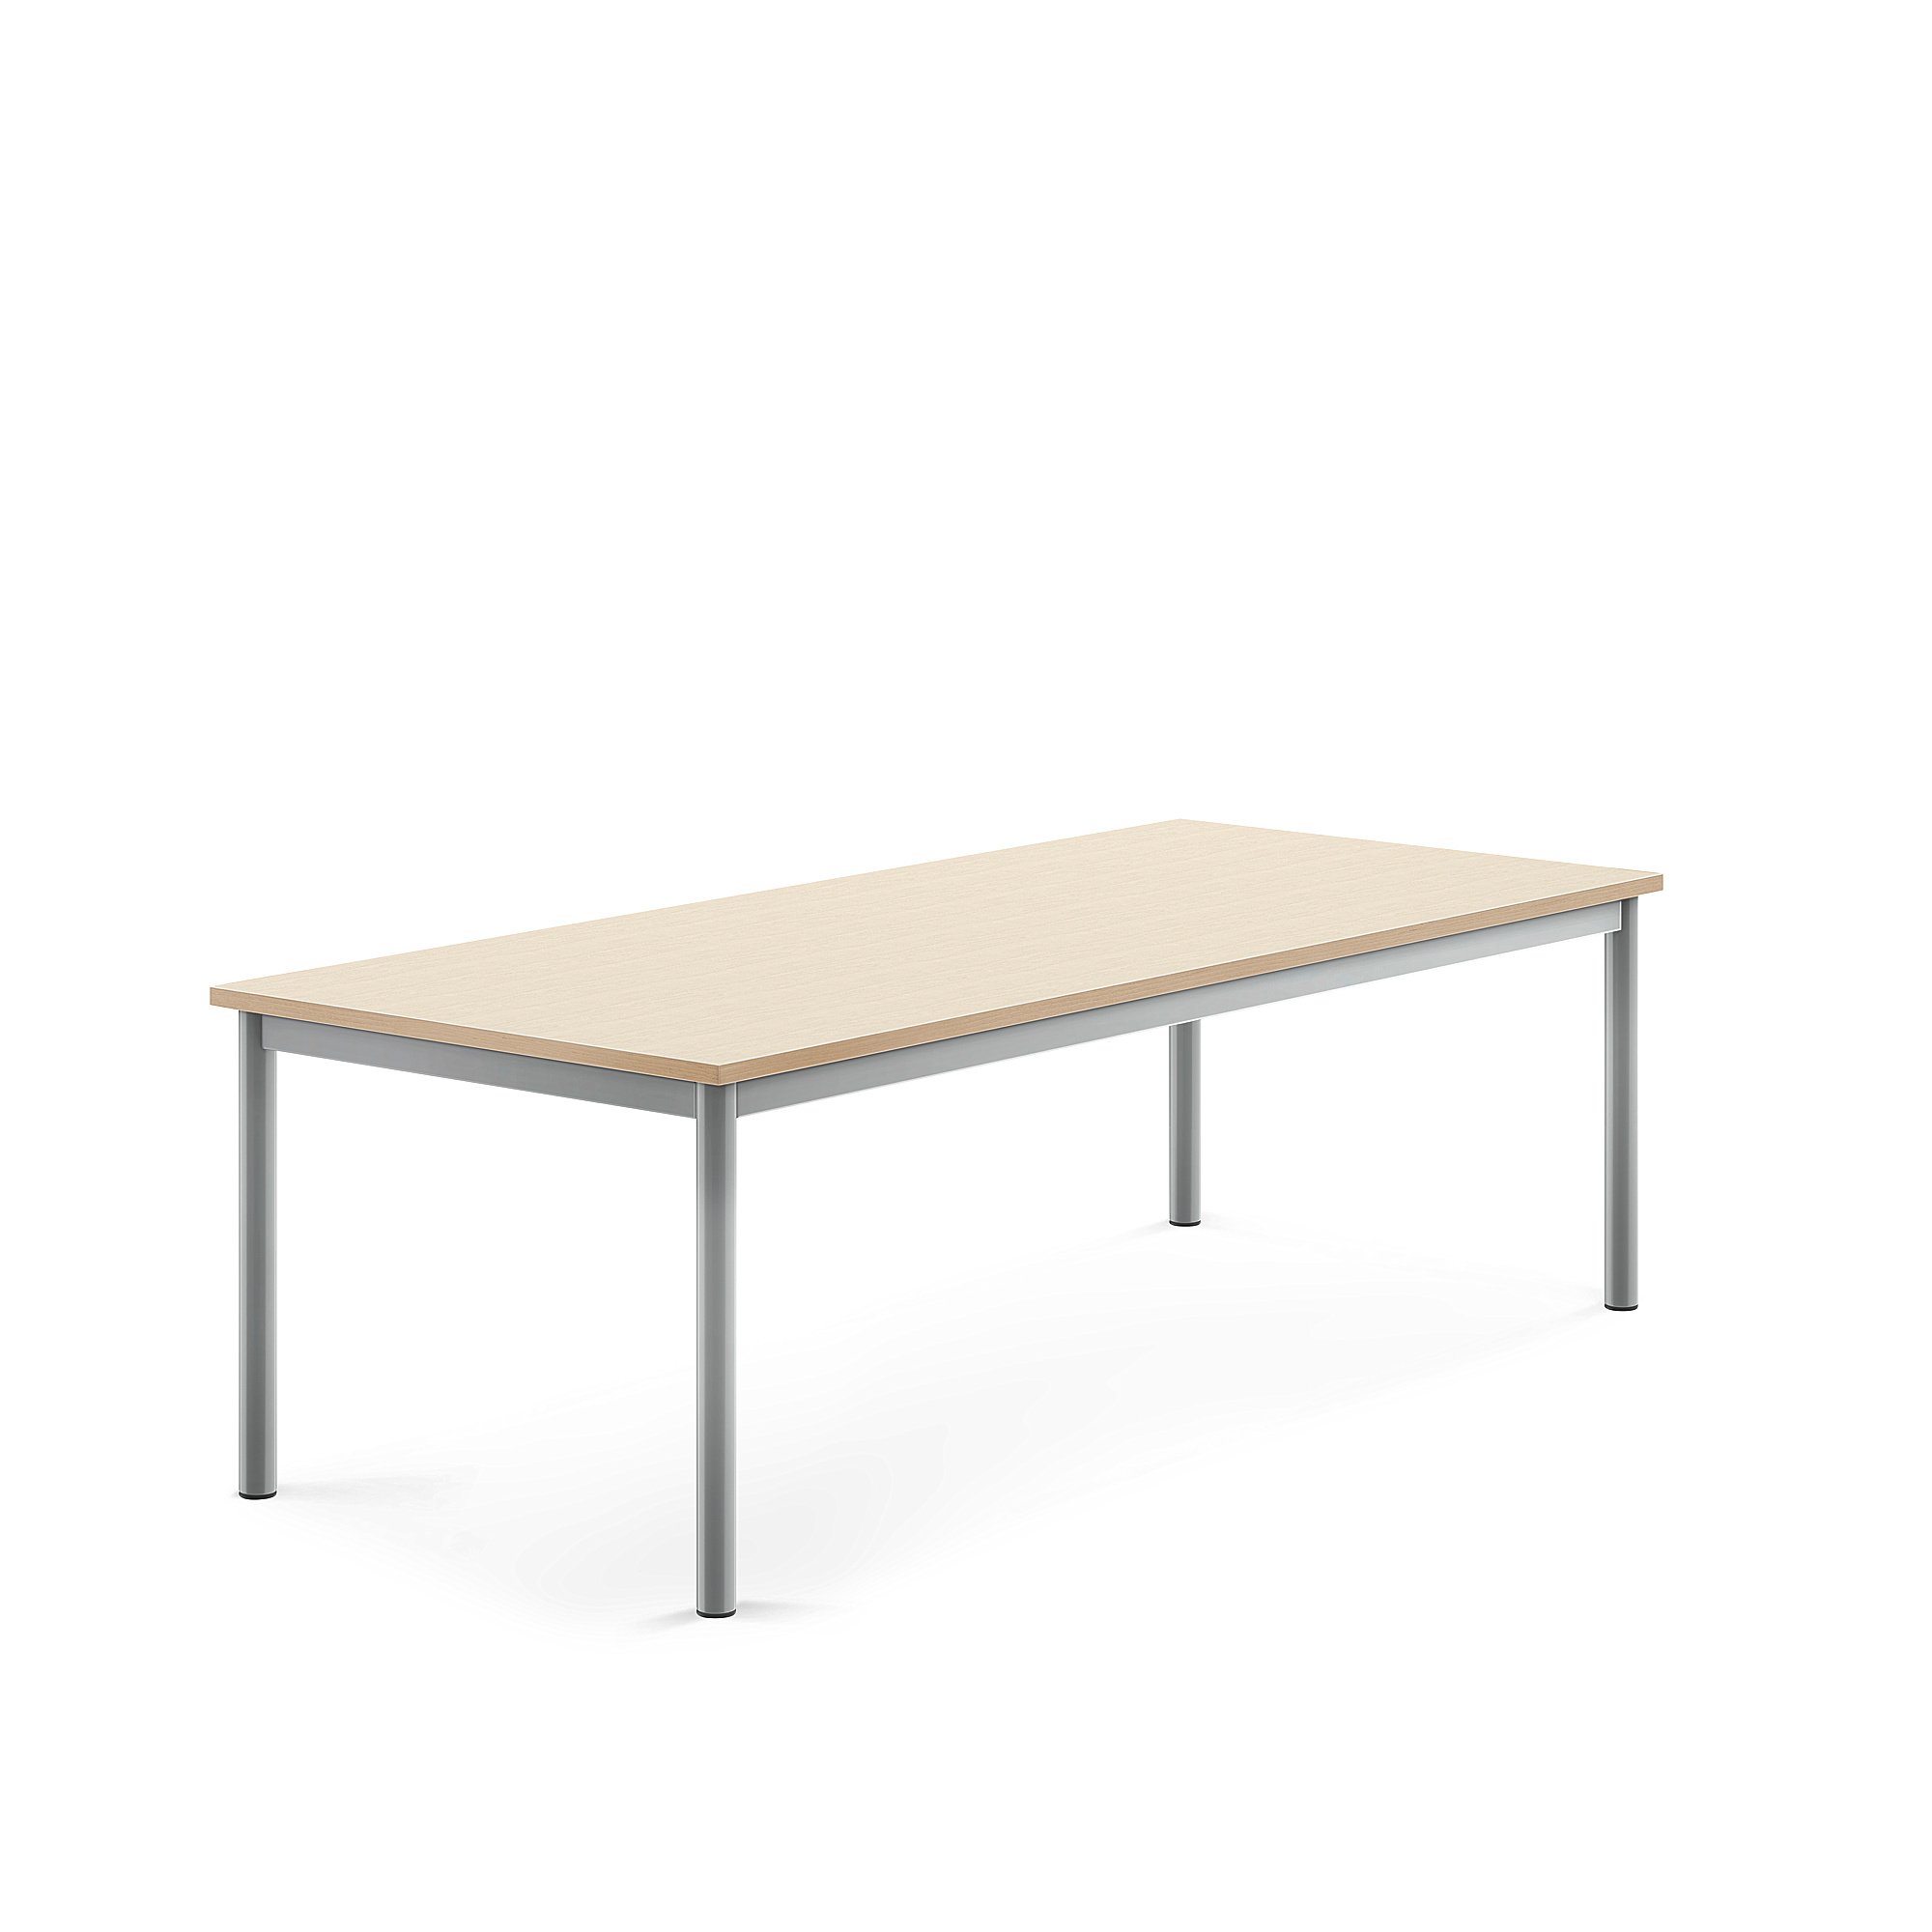 Stůl BORÅS, 1600x700x500 mm, stříbrné nohy, HPL deska, bříza